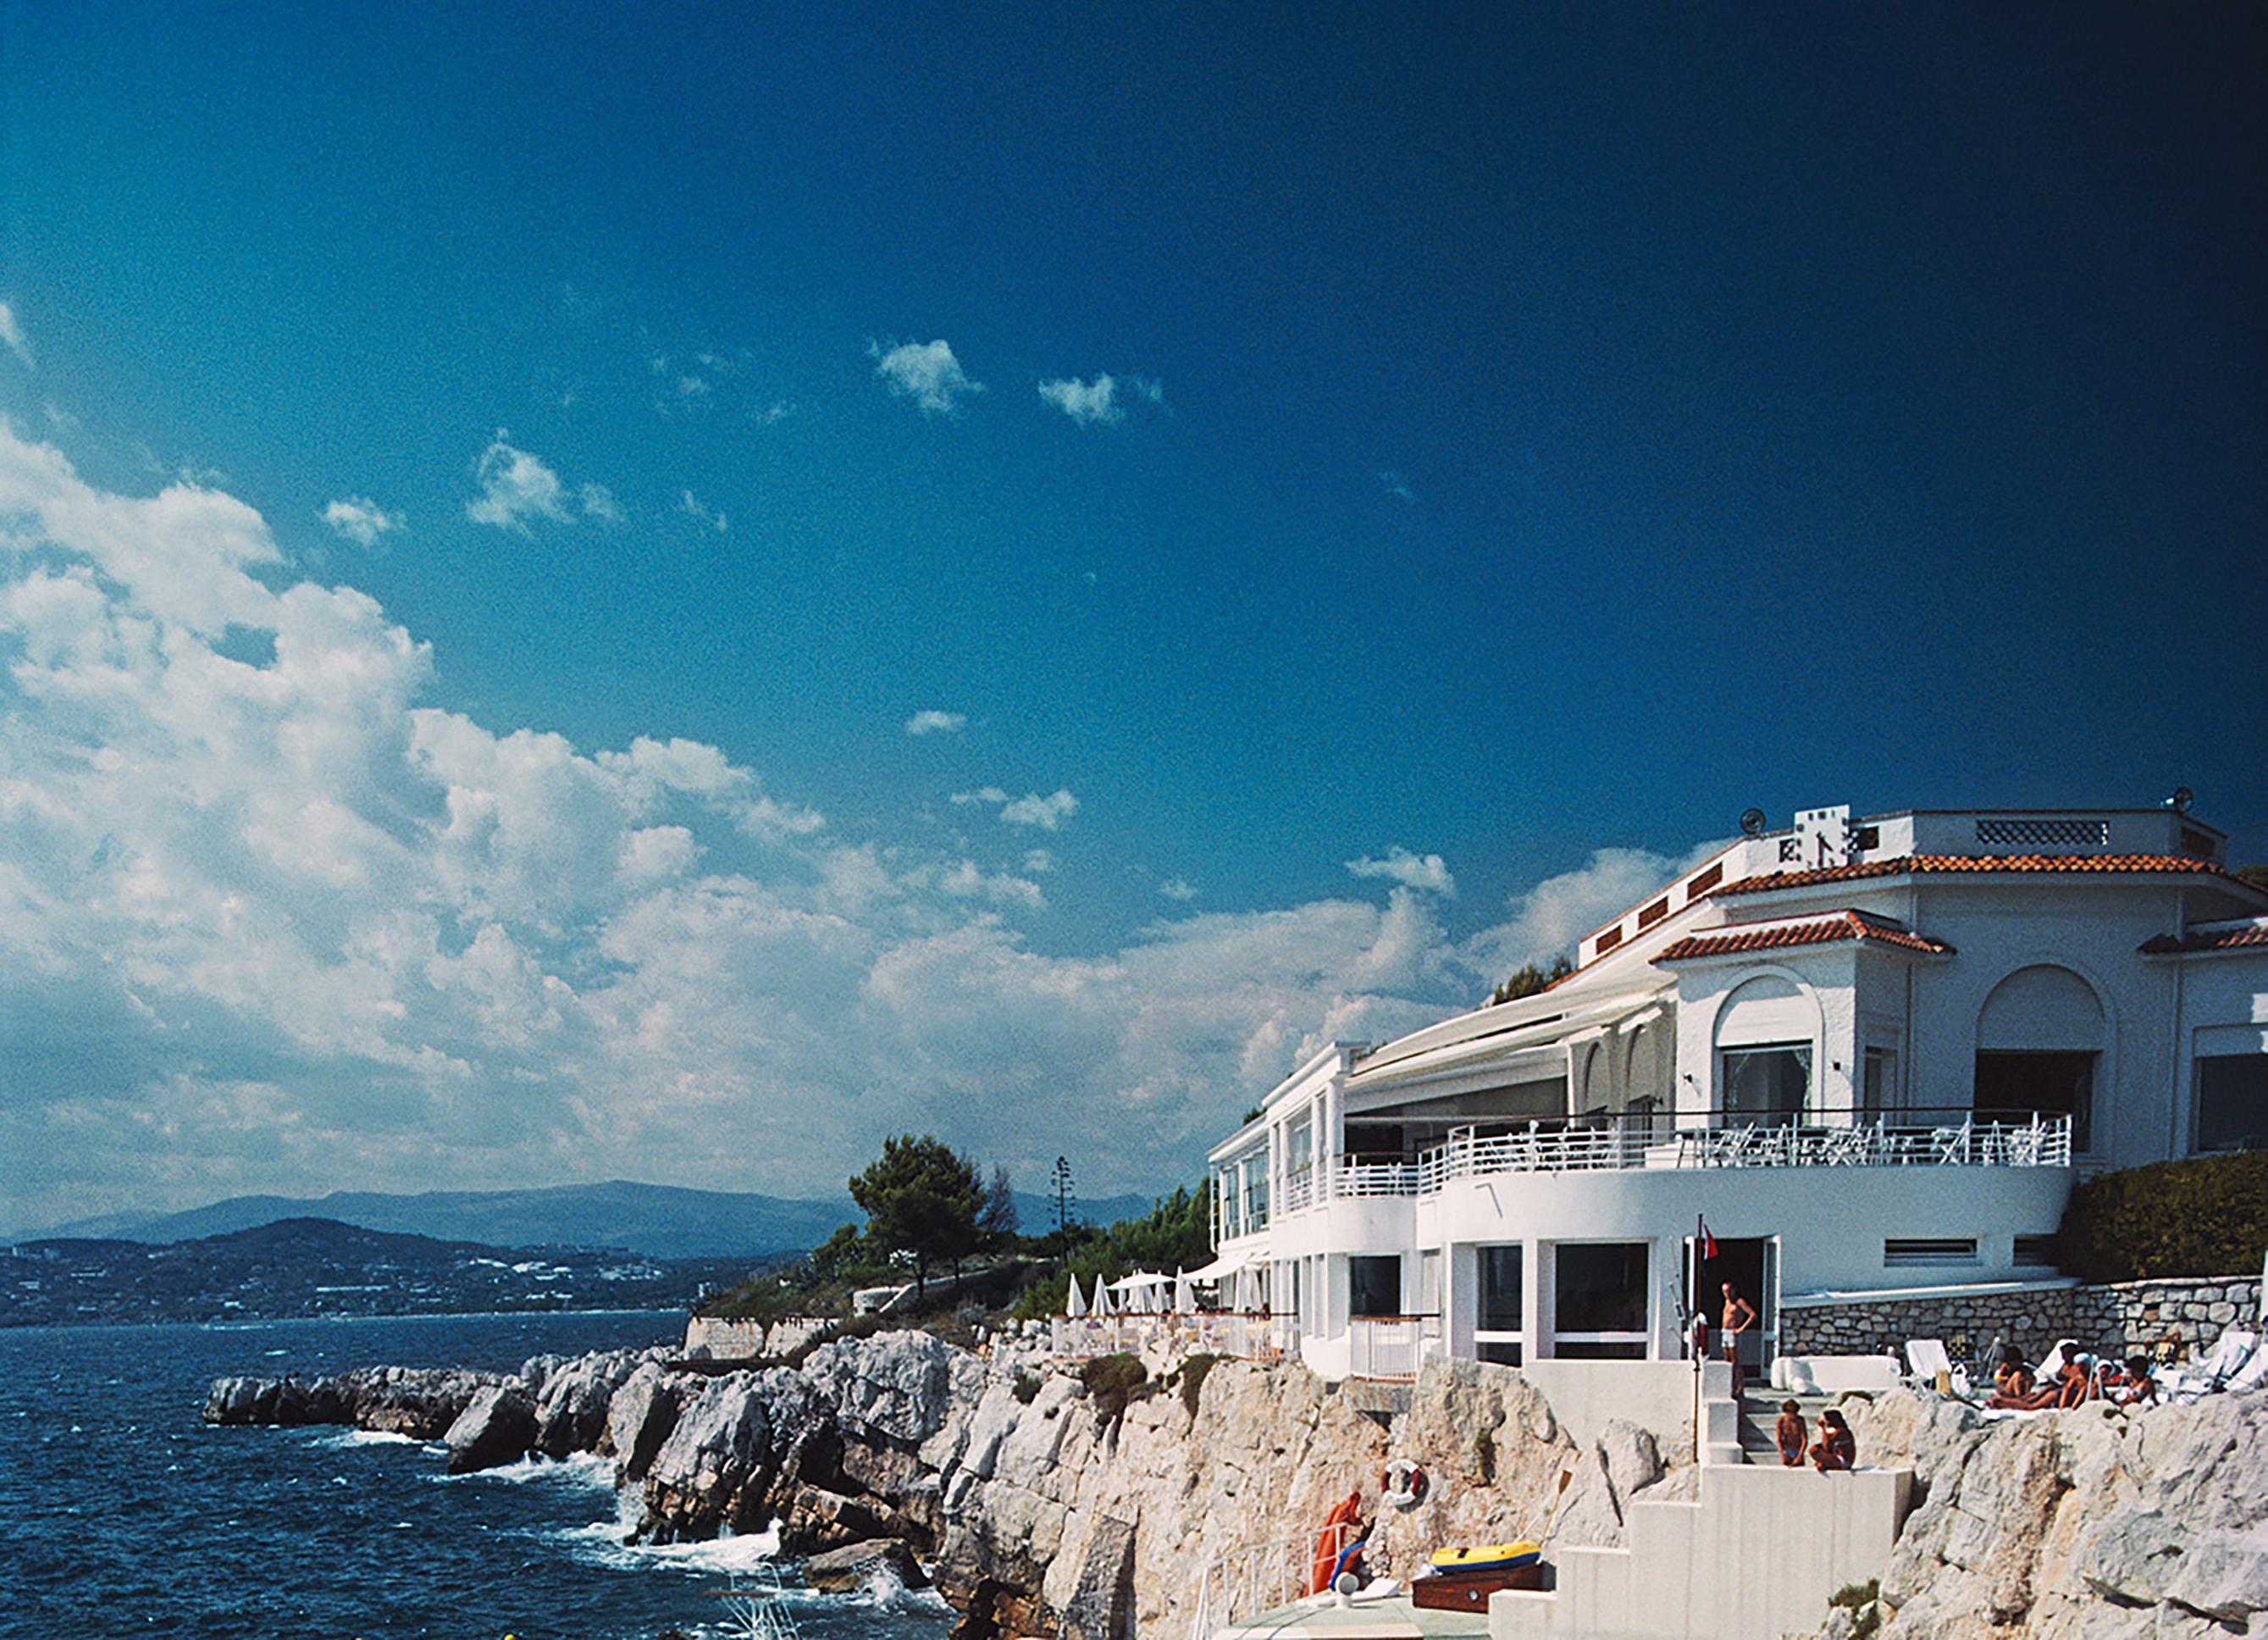 Des baigneurs profitent du soleil au bord de la piscine de l'Hôtel du Cap Eden-Roc, Antibes, France, 1976. La photographie emblématique d'Aarons représente l'hôtel légendaire rendu célèbre par Tendre est la nuit de Fitzgerald, la maison ensoleillée